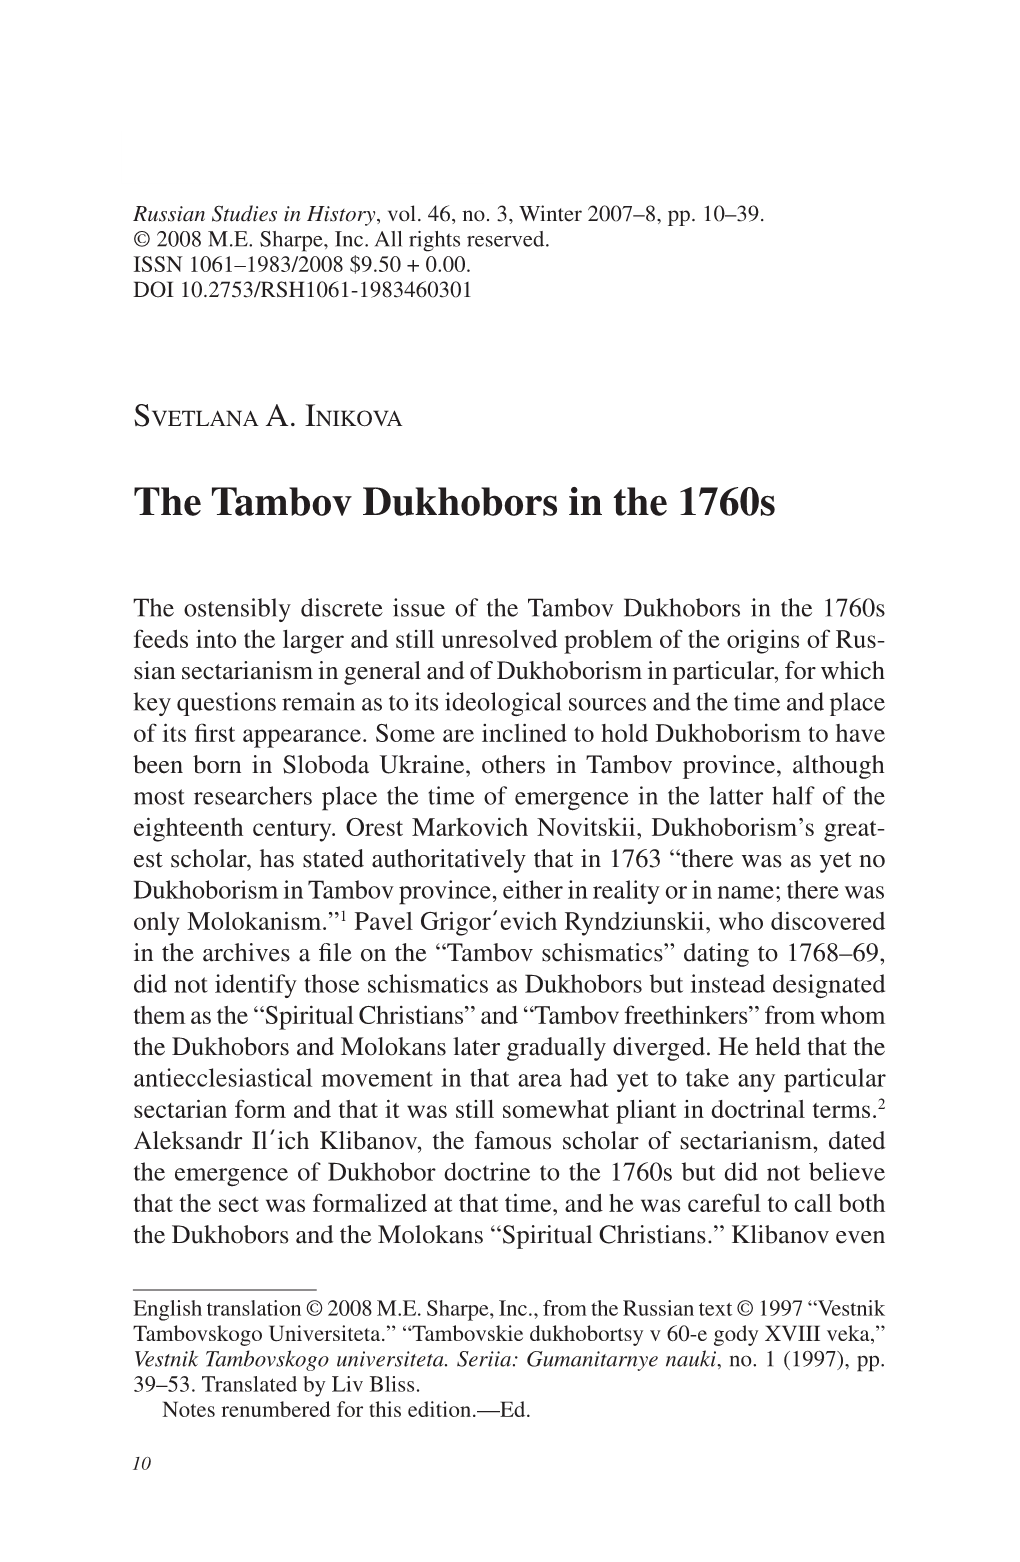 The Tambov Dukhobors in the 1760S